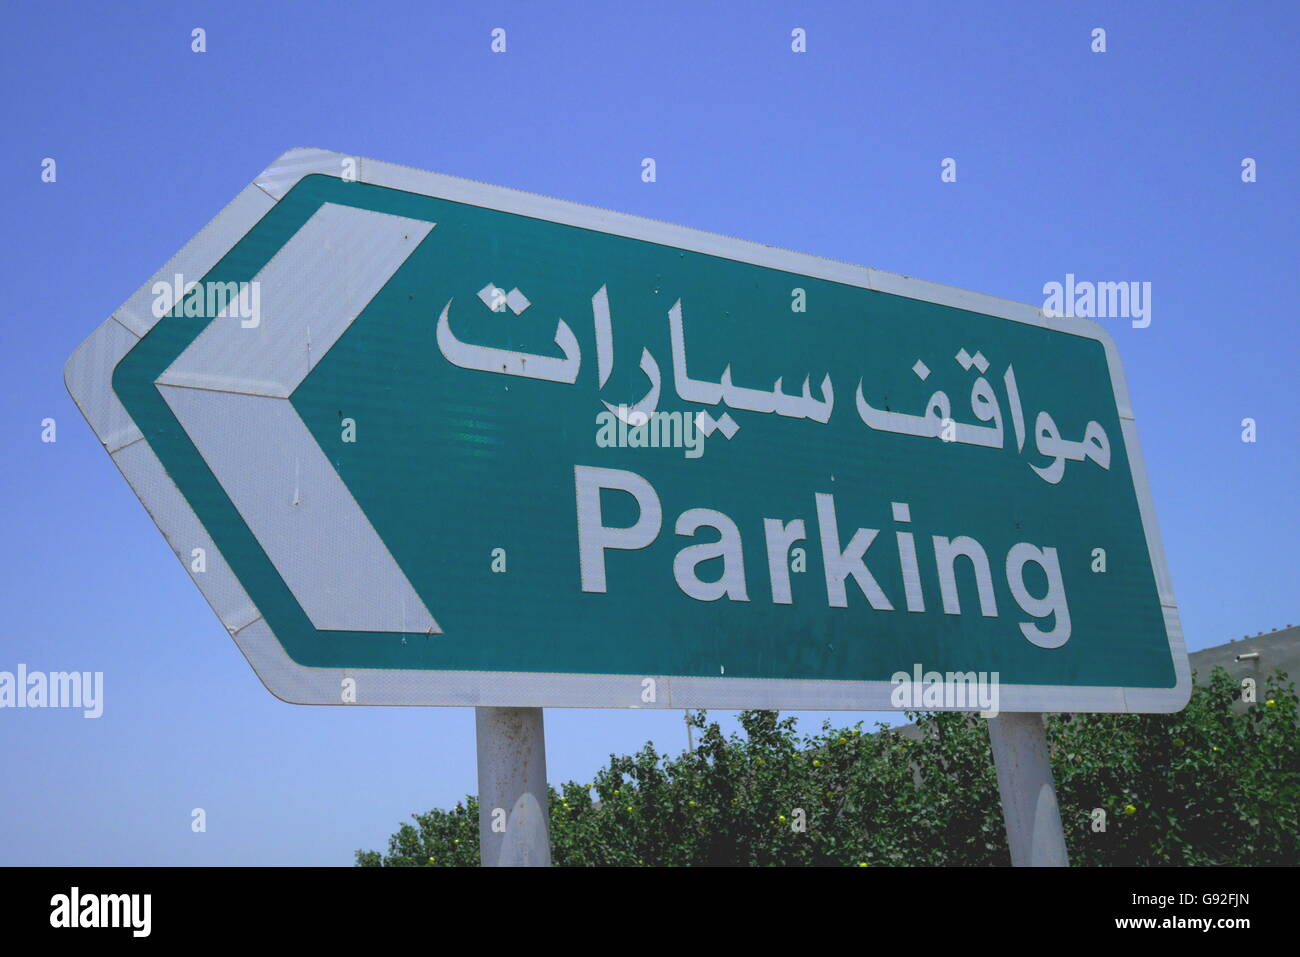 Panneau routier indiquant parking gratuit en anglais et en arabe, le village d'Al Jasra, Royaume de Bahreïn Banque D'Images